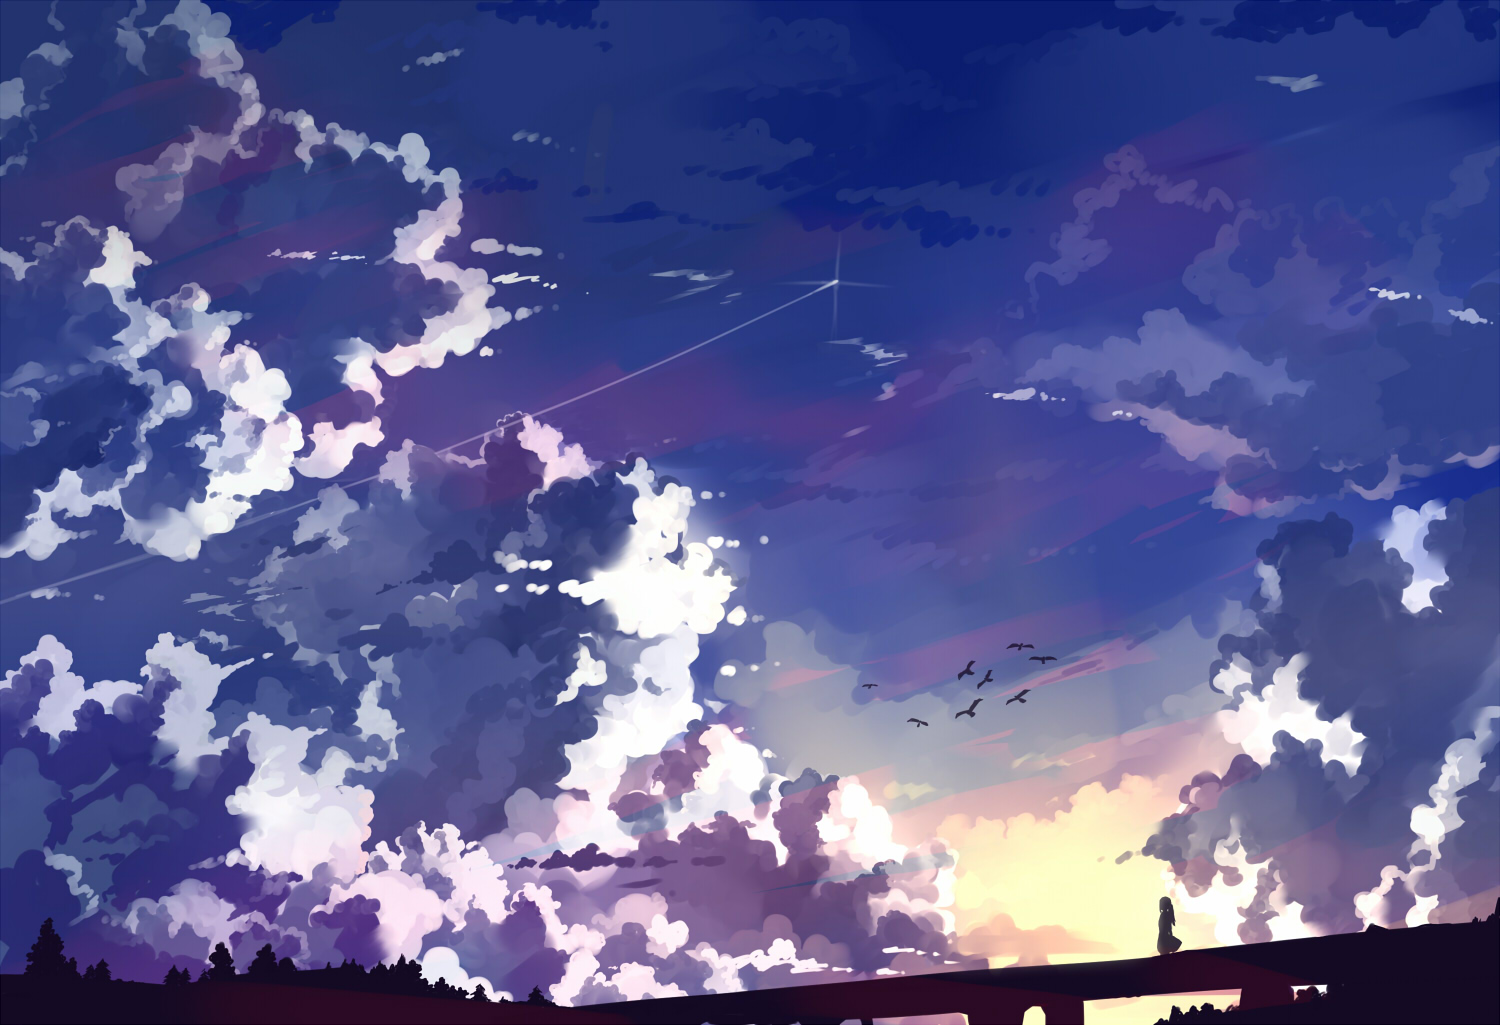 1 二次風景画像 40枚 青空 夕方 夜空 曇空 雨空 イラスト 壁紙 風景と少女による可能世界